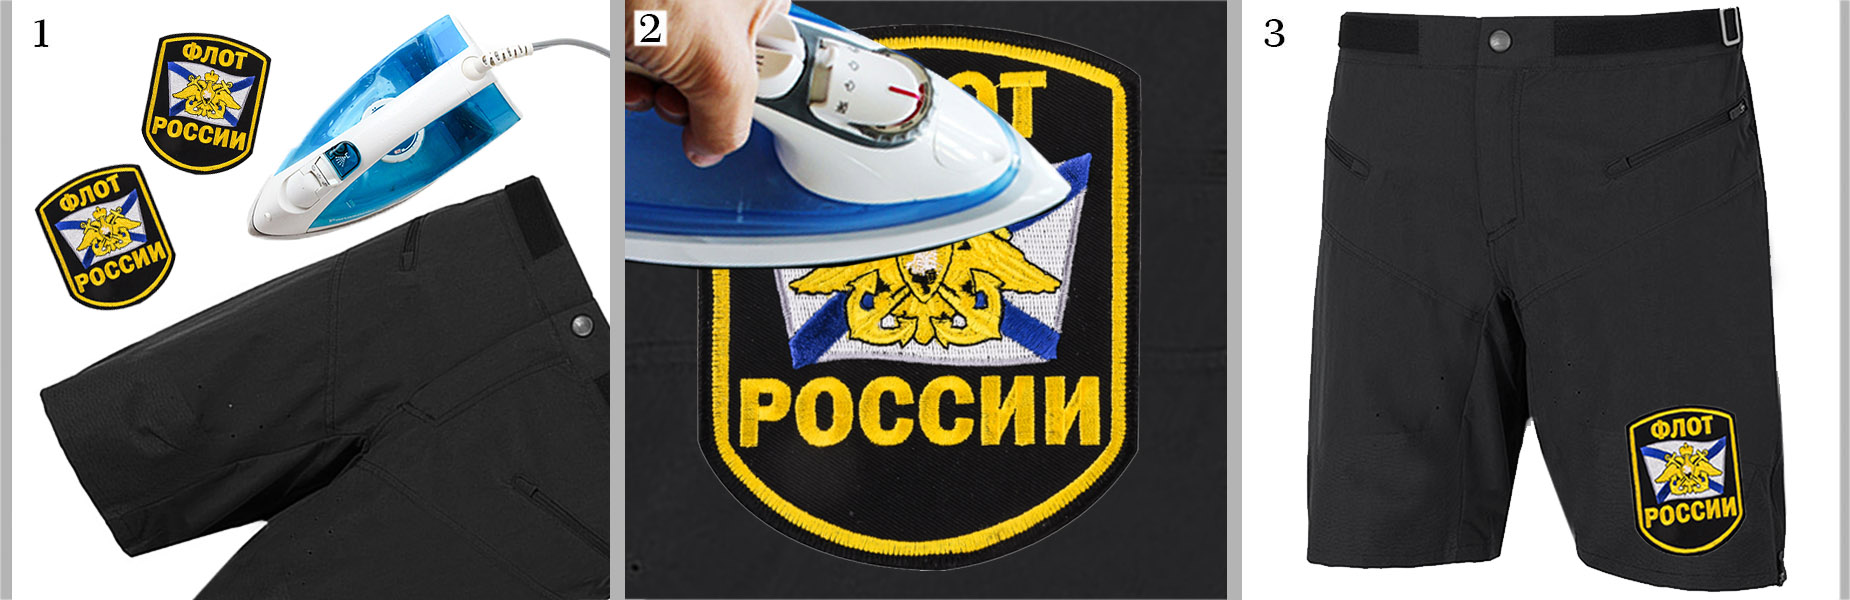 Шеврон "Флот России" - украшение на любимые шорты